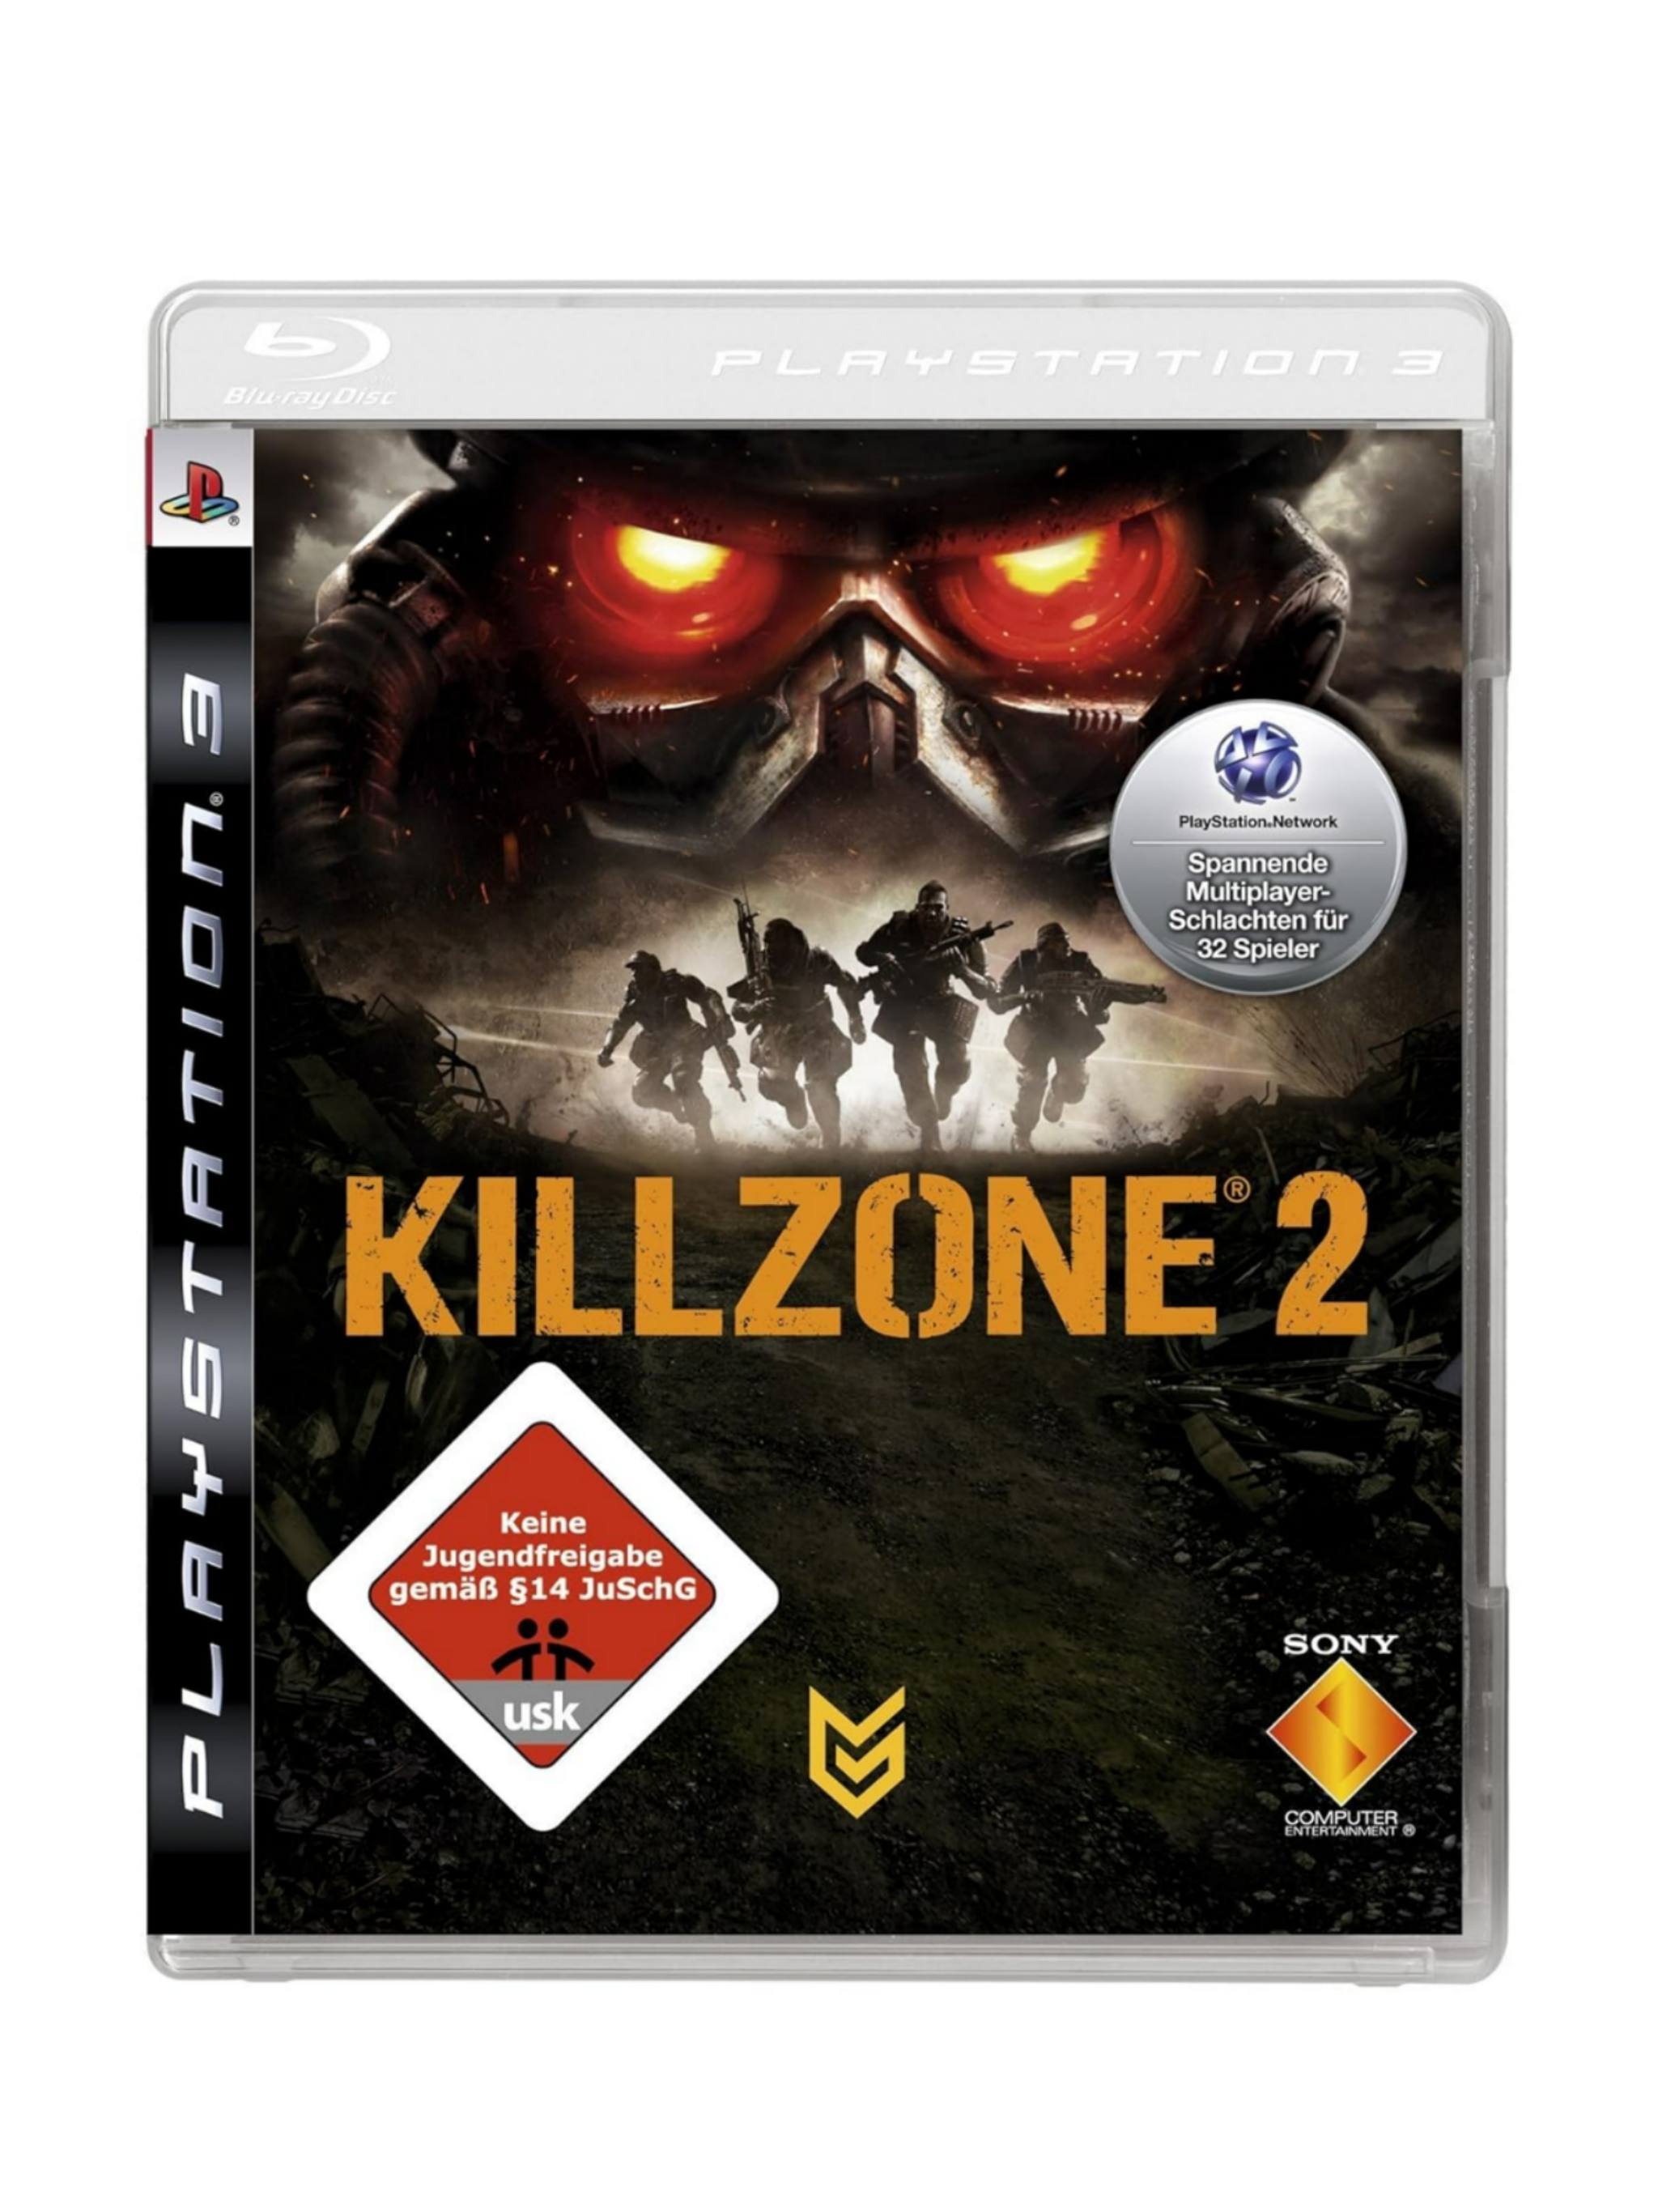 Killzone 2 PS3